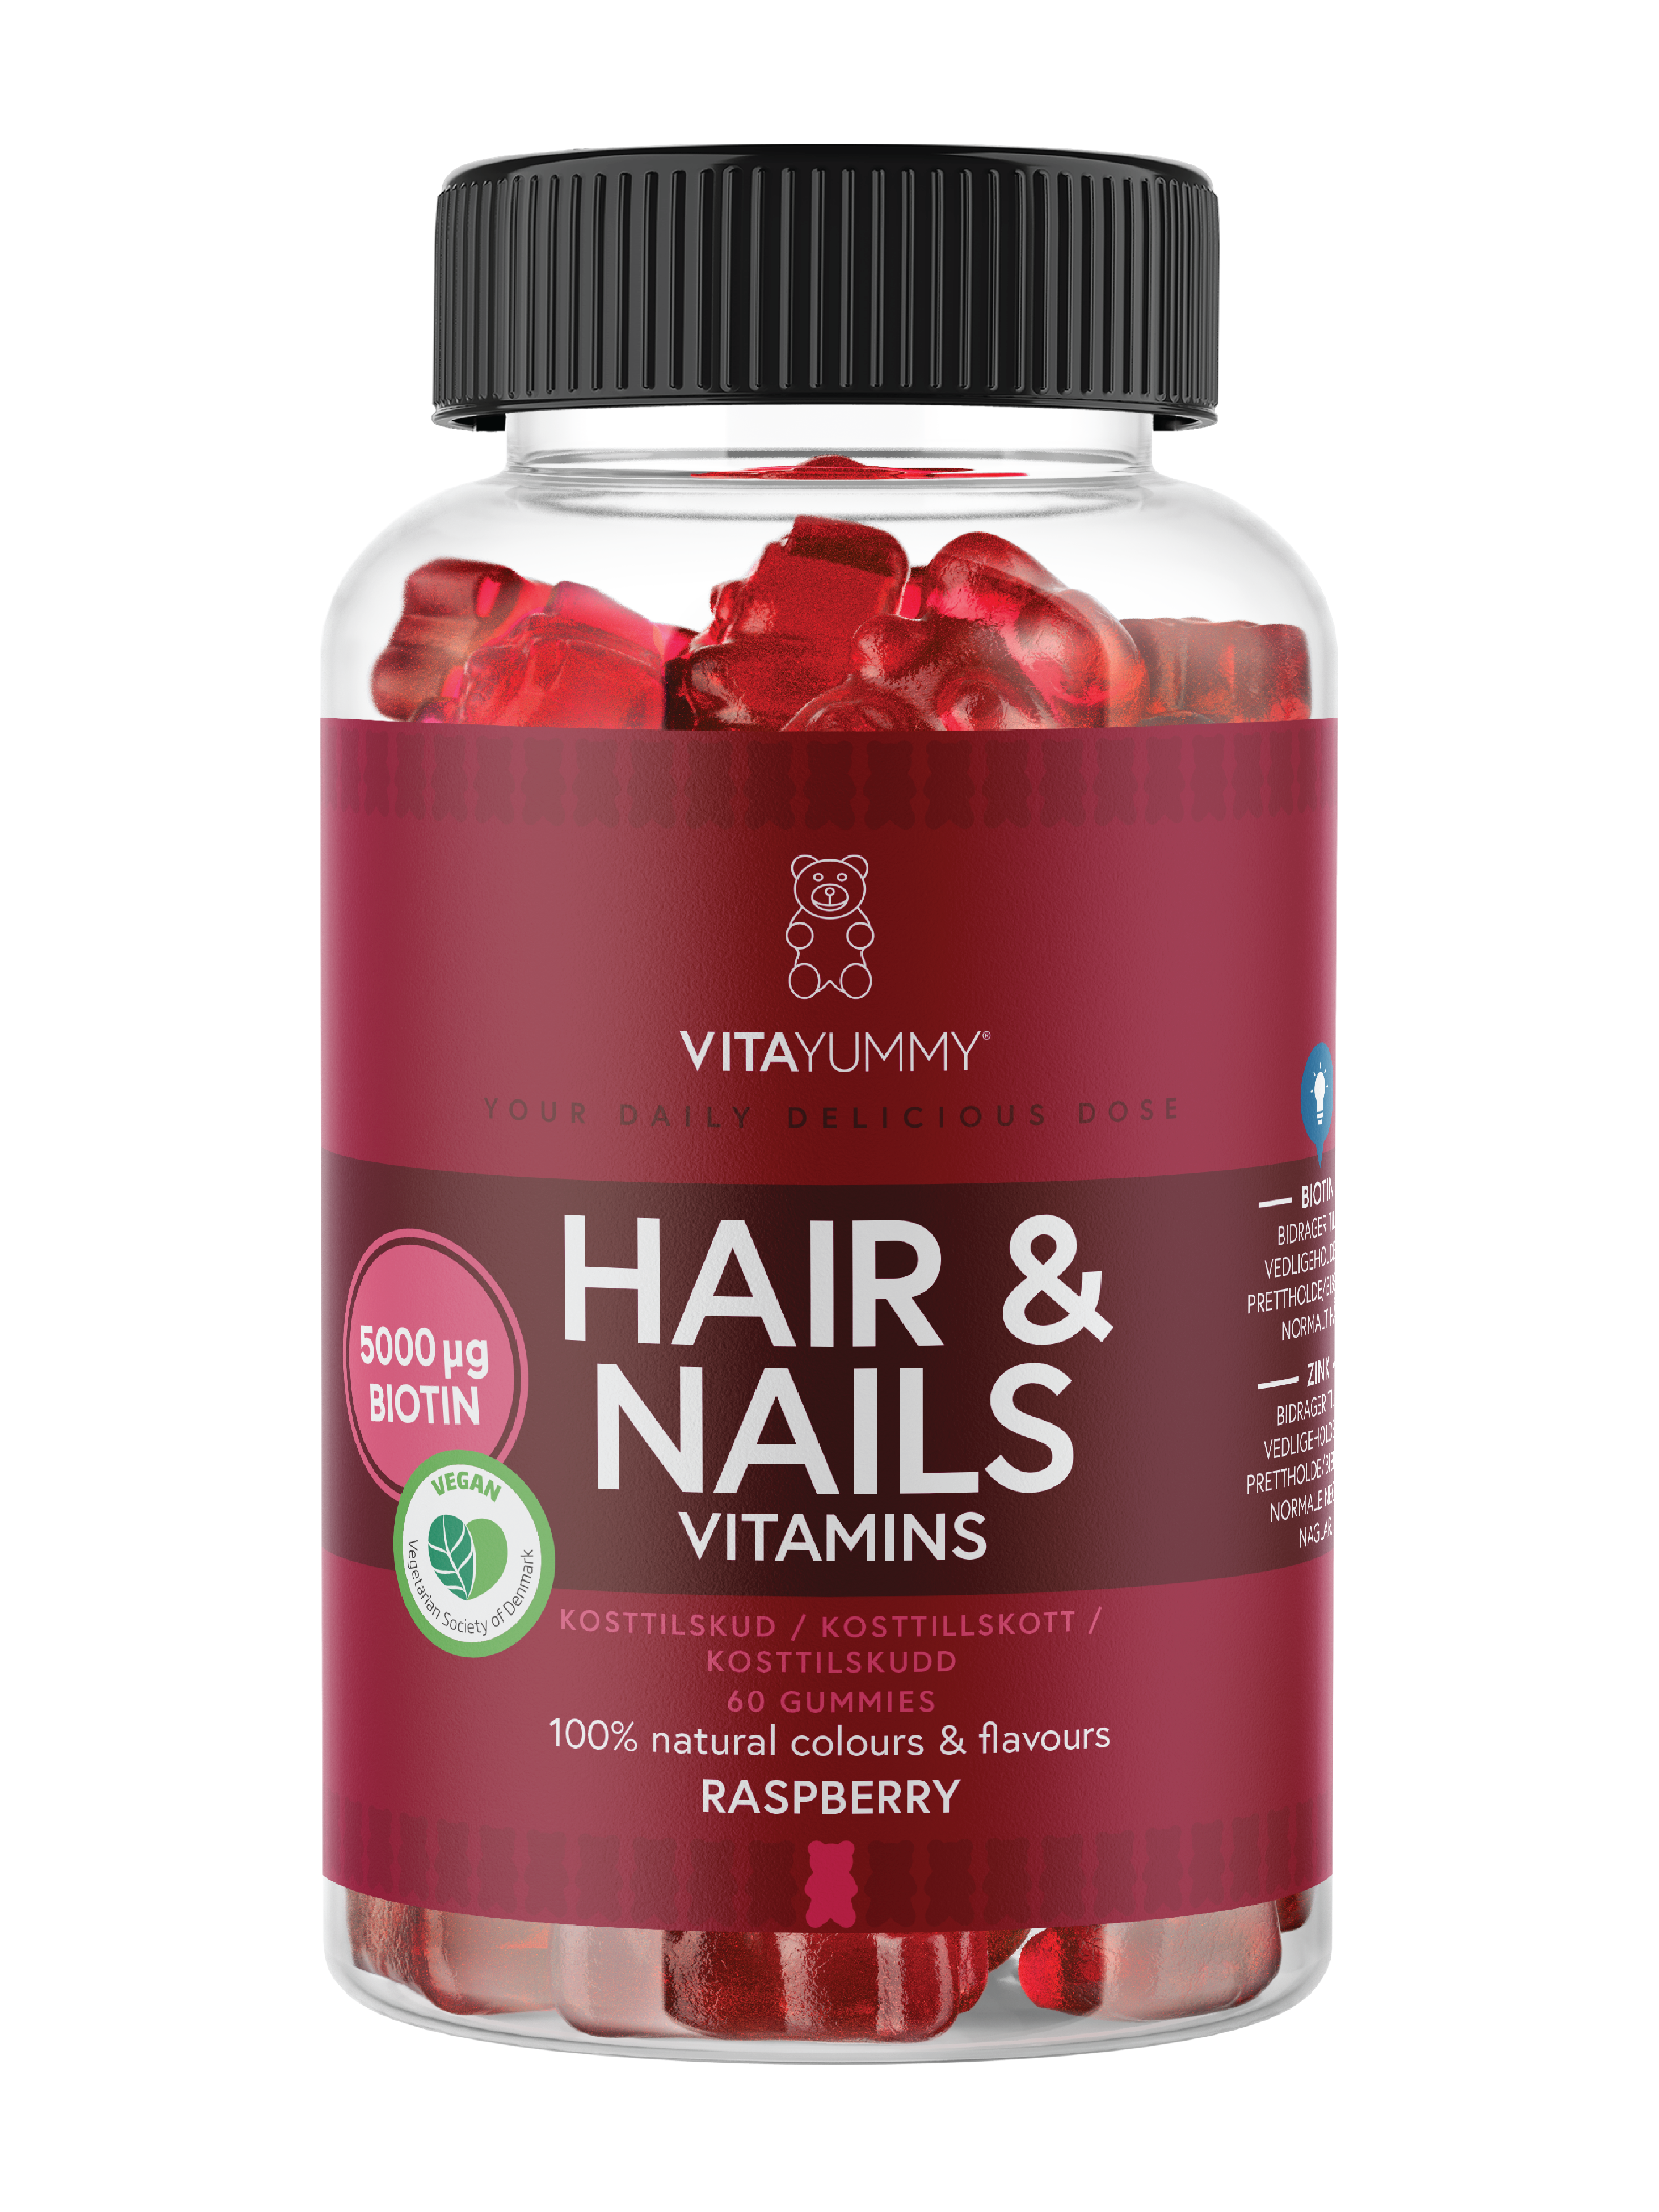 VitaYummy Hair & Nails Vitamins, Bringebær, 60 stk.